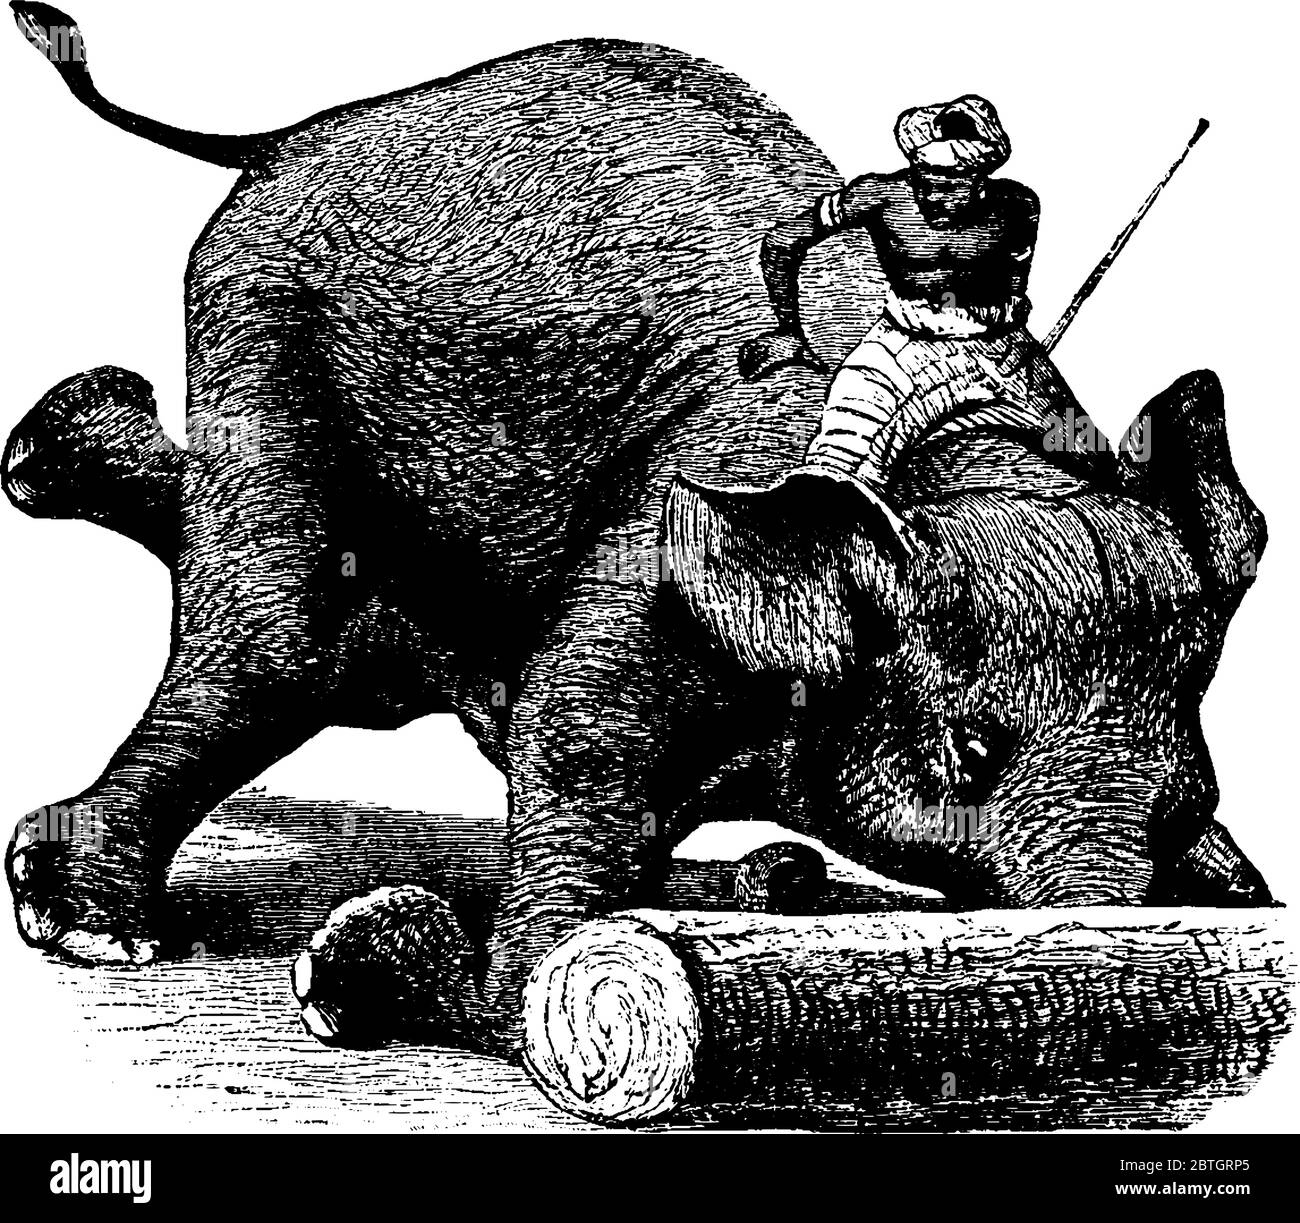 Ein Mahout reiten ein Elefant mit großen Ohren, Säule wie Beine, Rollen ein Log mit seinem langen Stamm, Vintage-Linie Zeichnung oder Gravur Illustration Stock Vektor